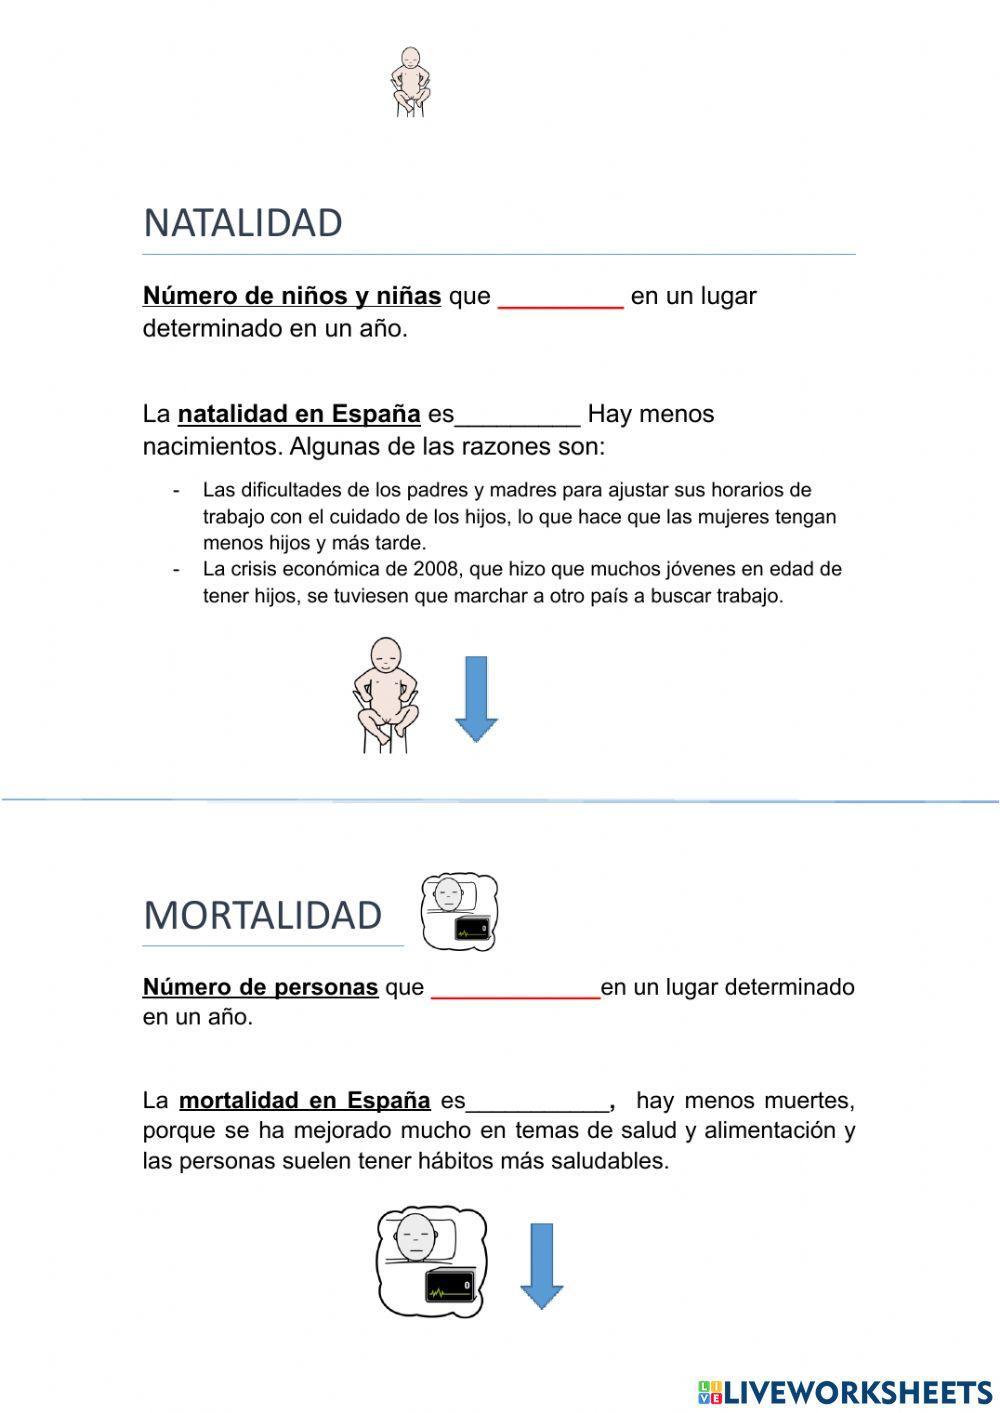 Natalidad, mortalidad. Población España y Europa